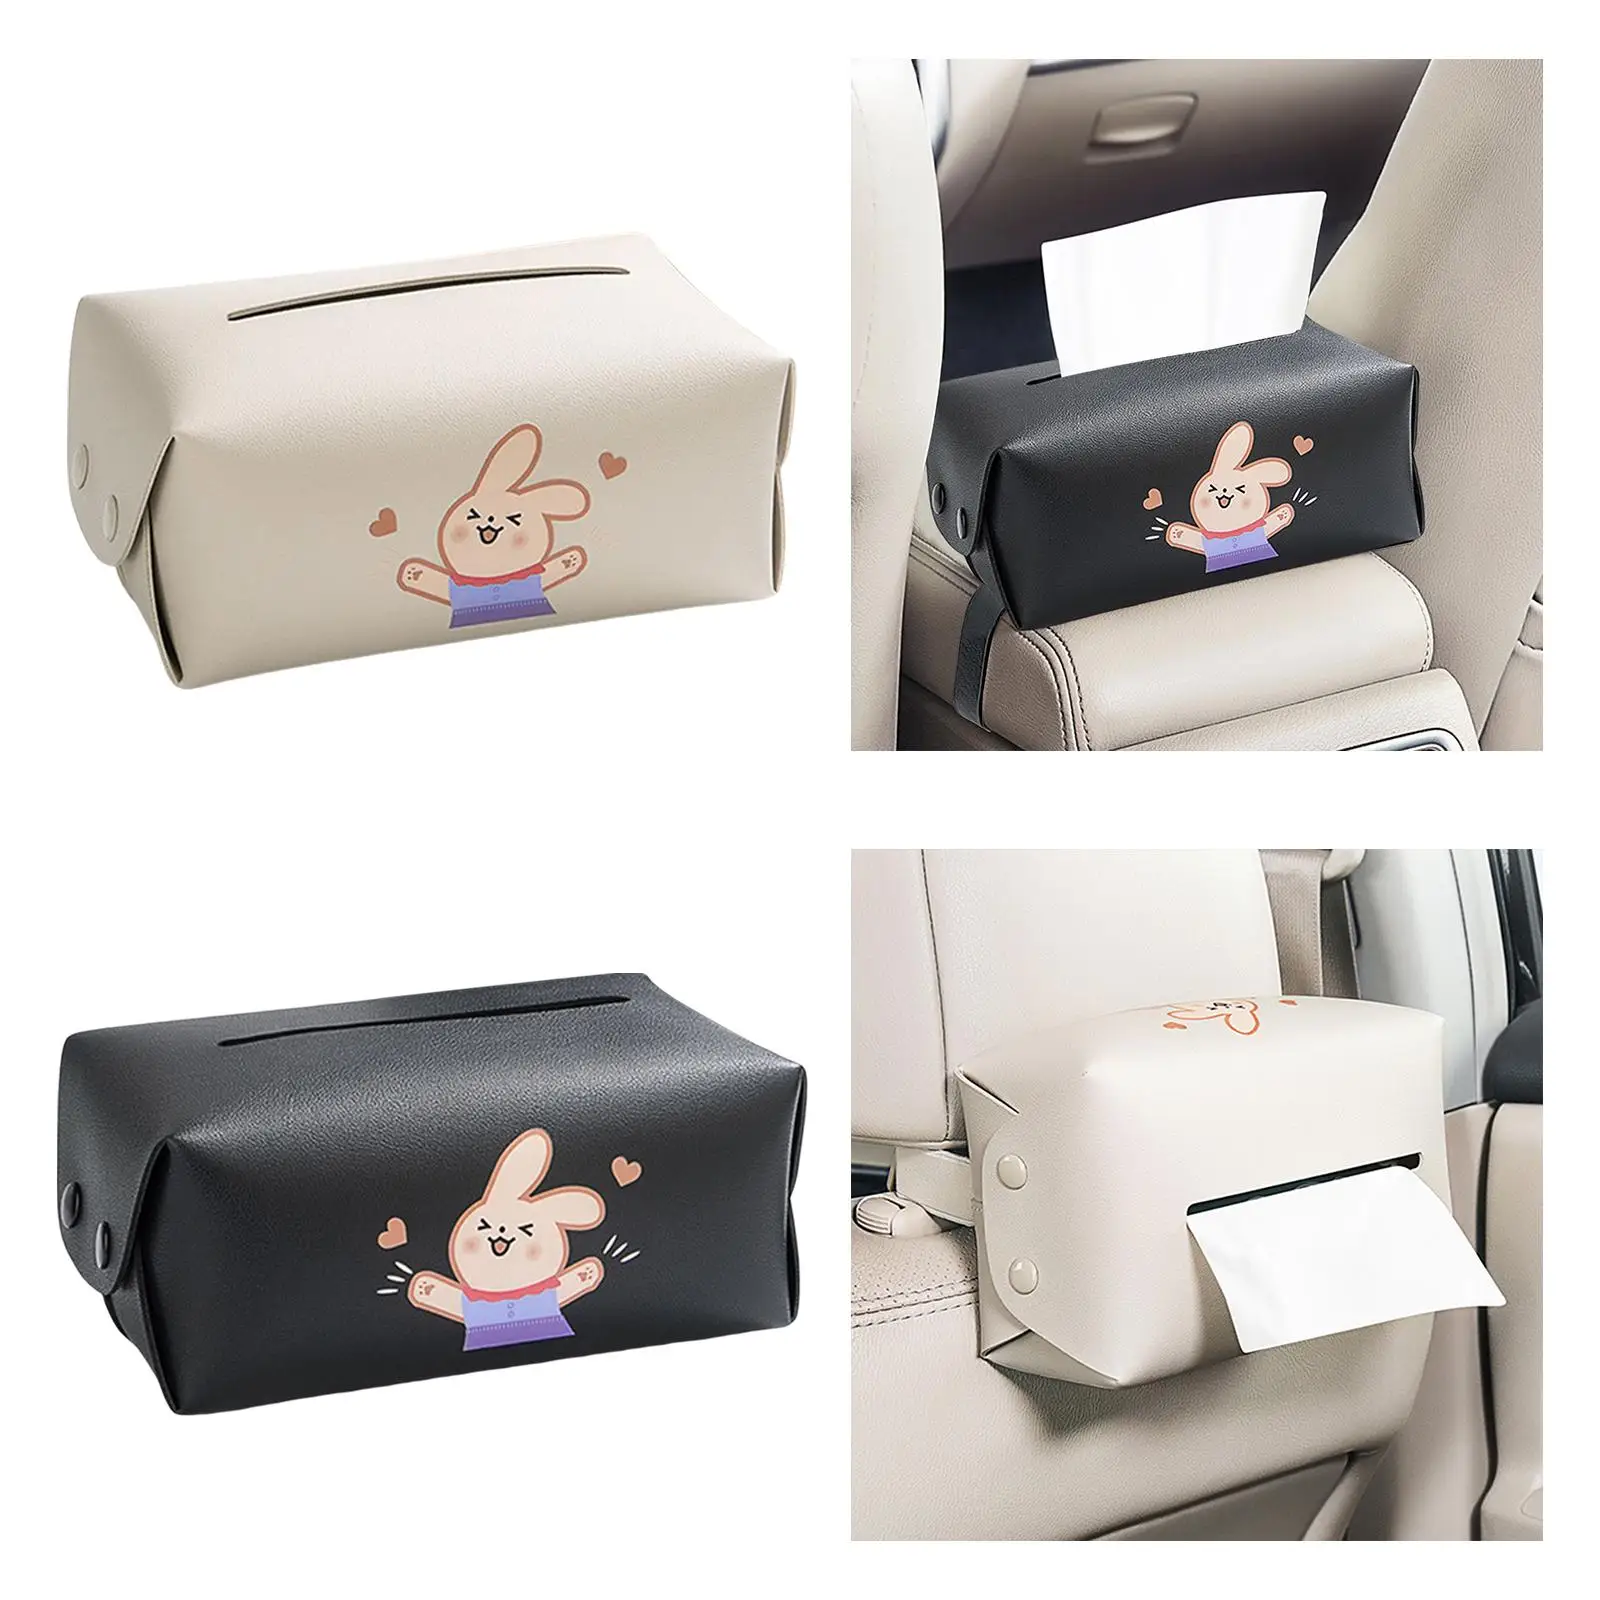 Auto Napkin Dispenser with Spring Bracket Car Tissue Holder for Car Armrest Box